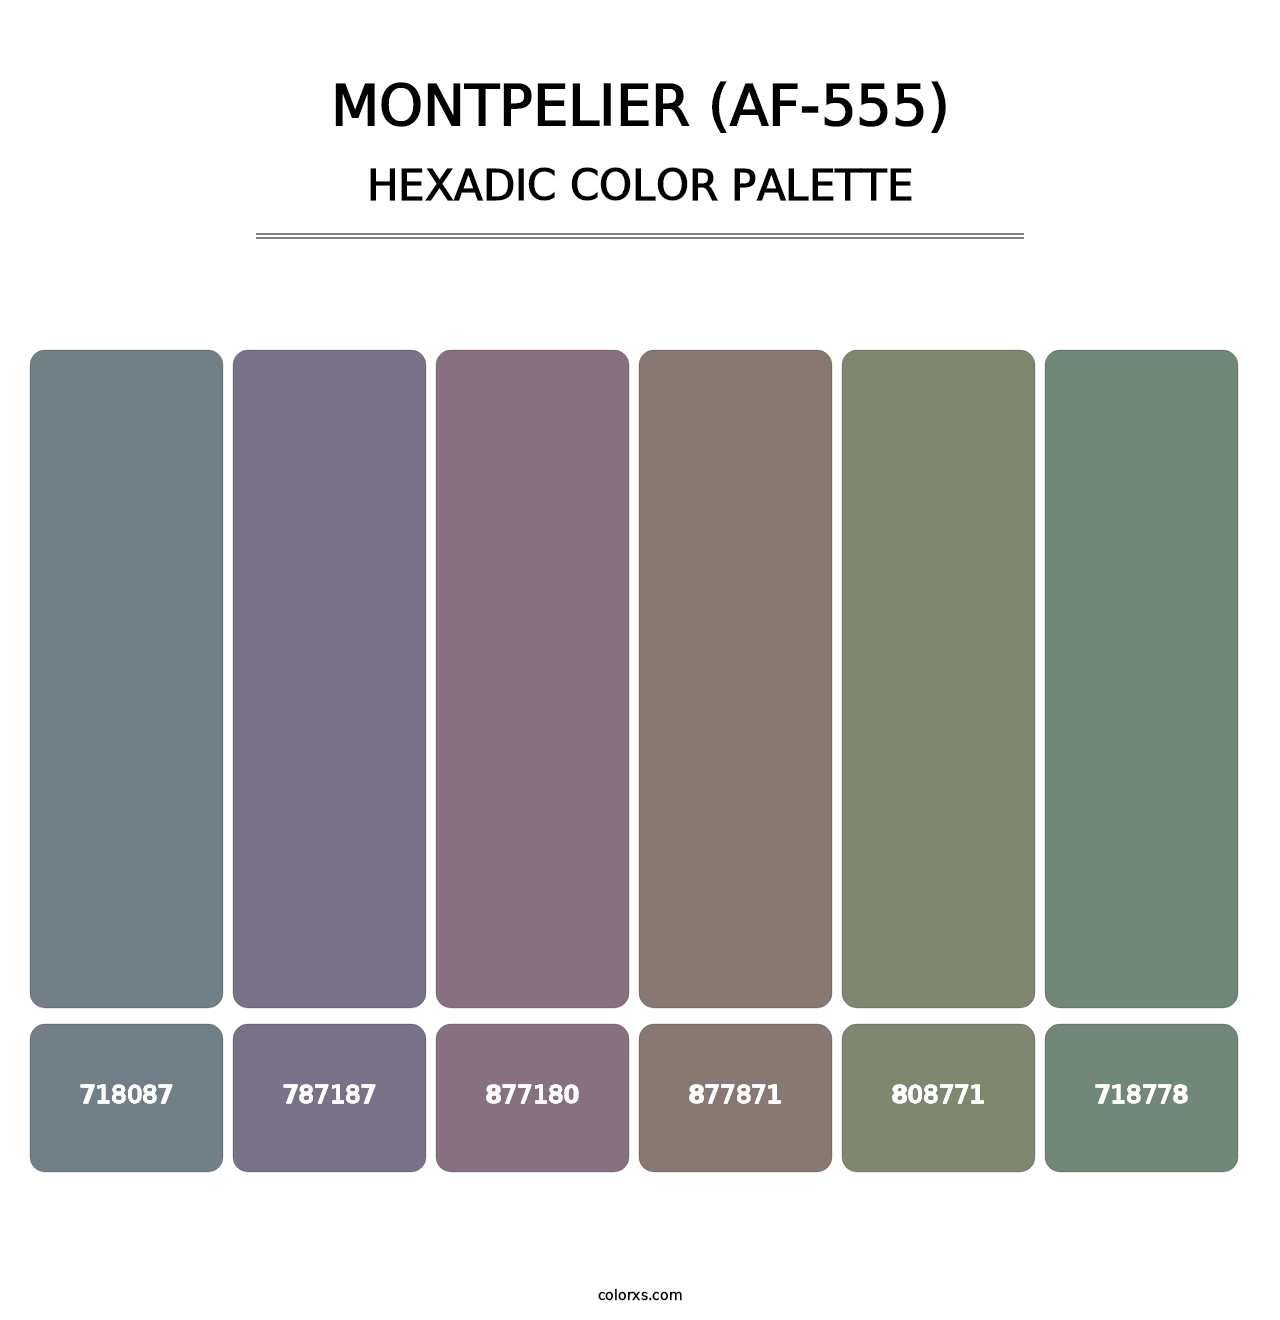 Montpelier (AF-555) - Hexadic Color Palette